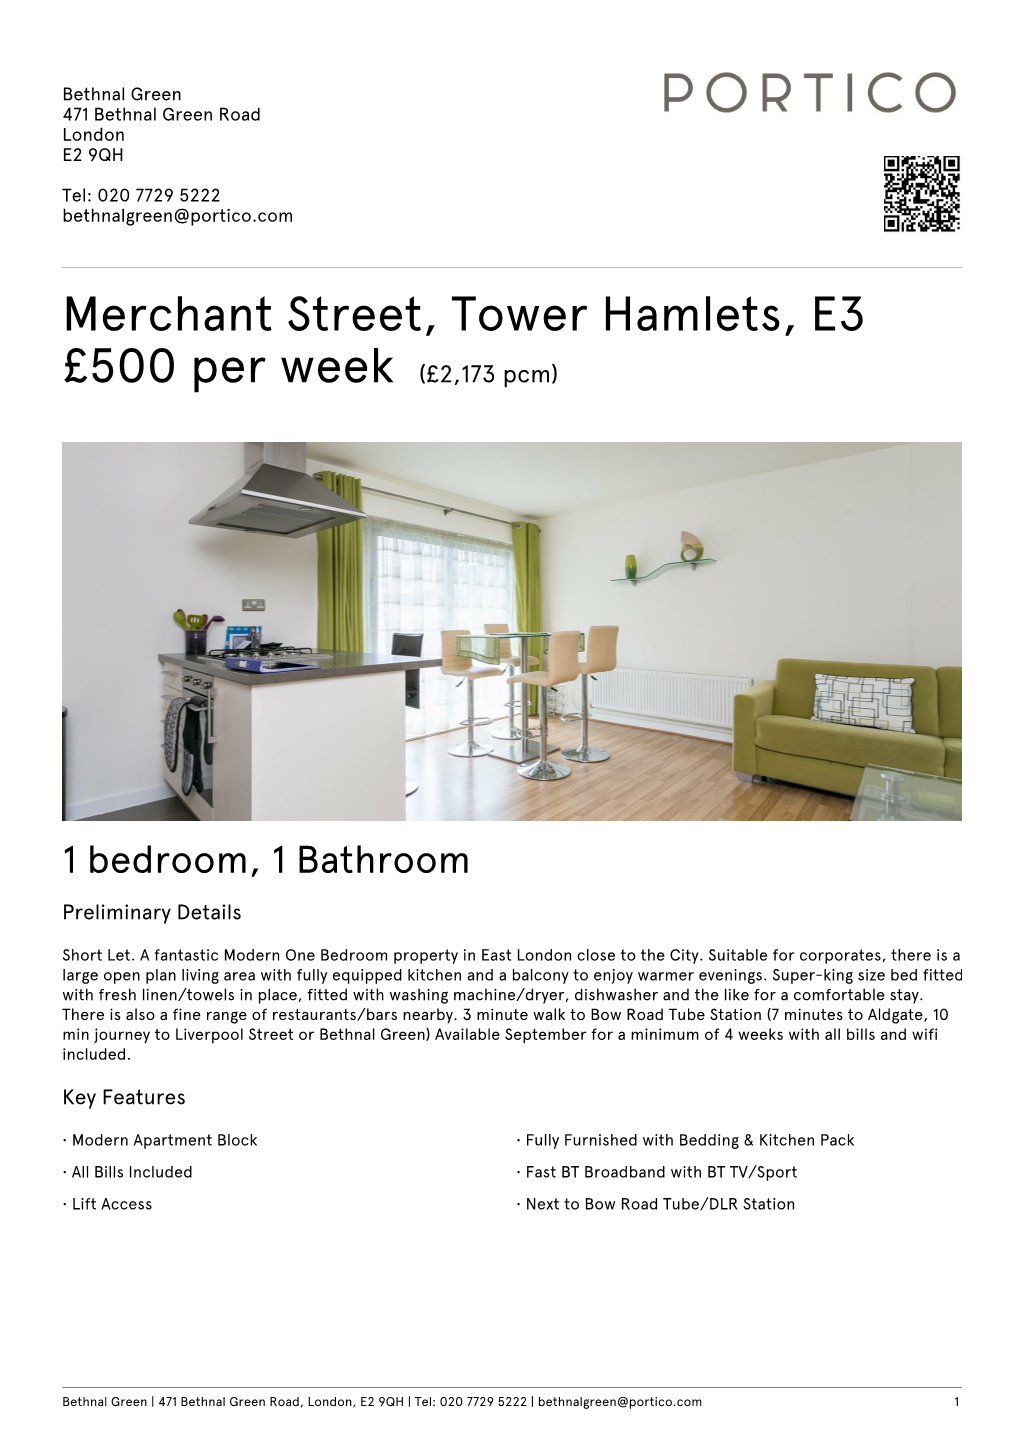 Merchant Street, Tower Hamlets, E3 £500 Per Week